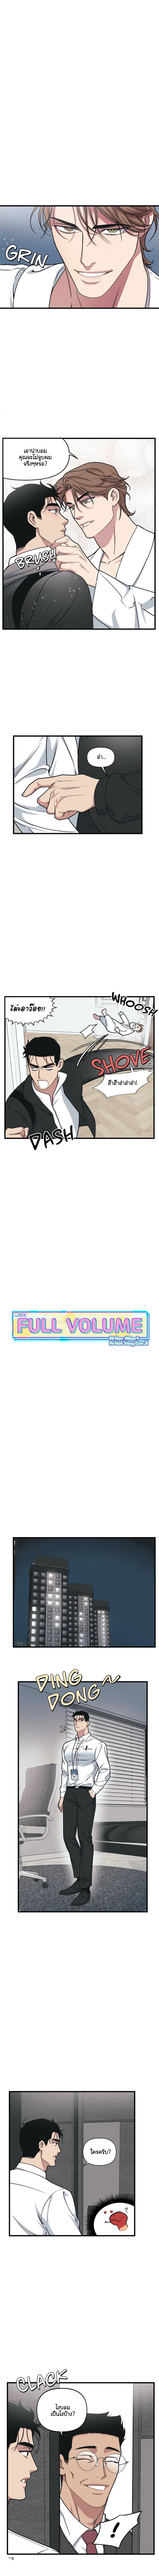 Full-Volume-25-4.jpg